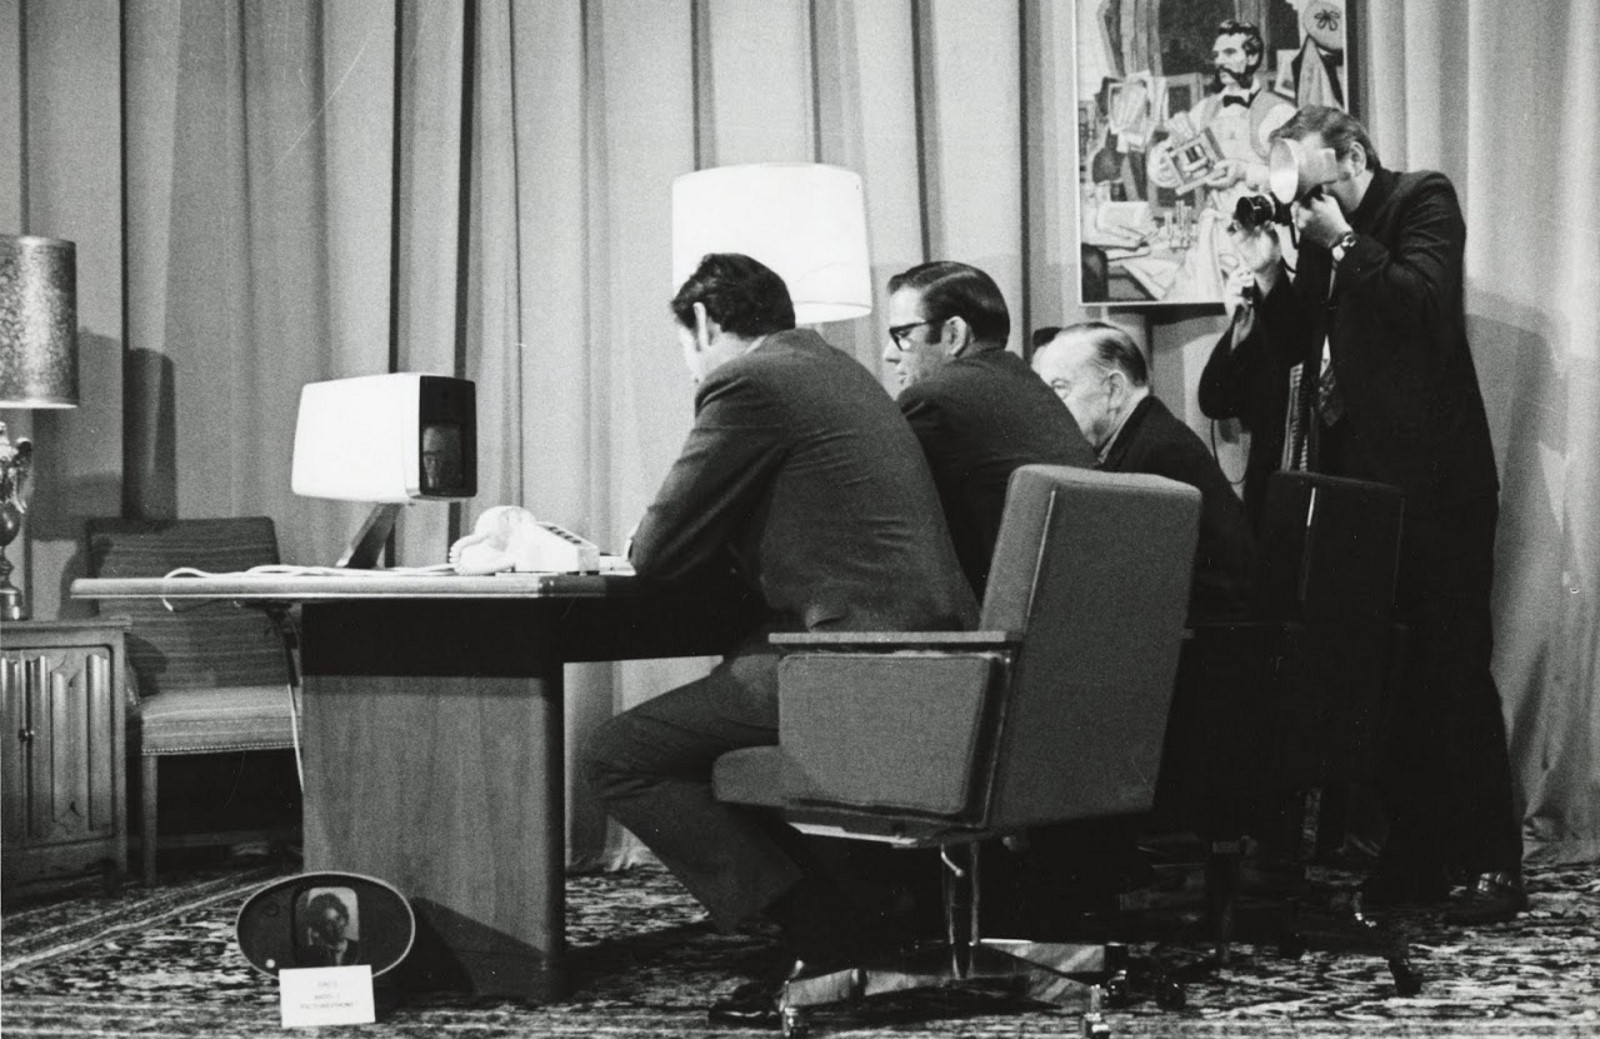 Le 30 juin 1970 AT&T lançait le Picturephone II, le premier appareil de visioconférence grand public. © Université de Carnegie Mellon